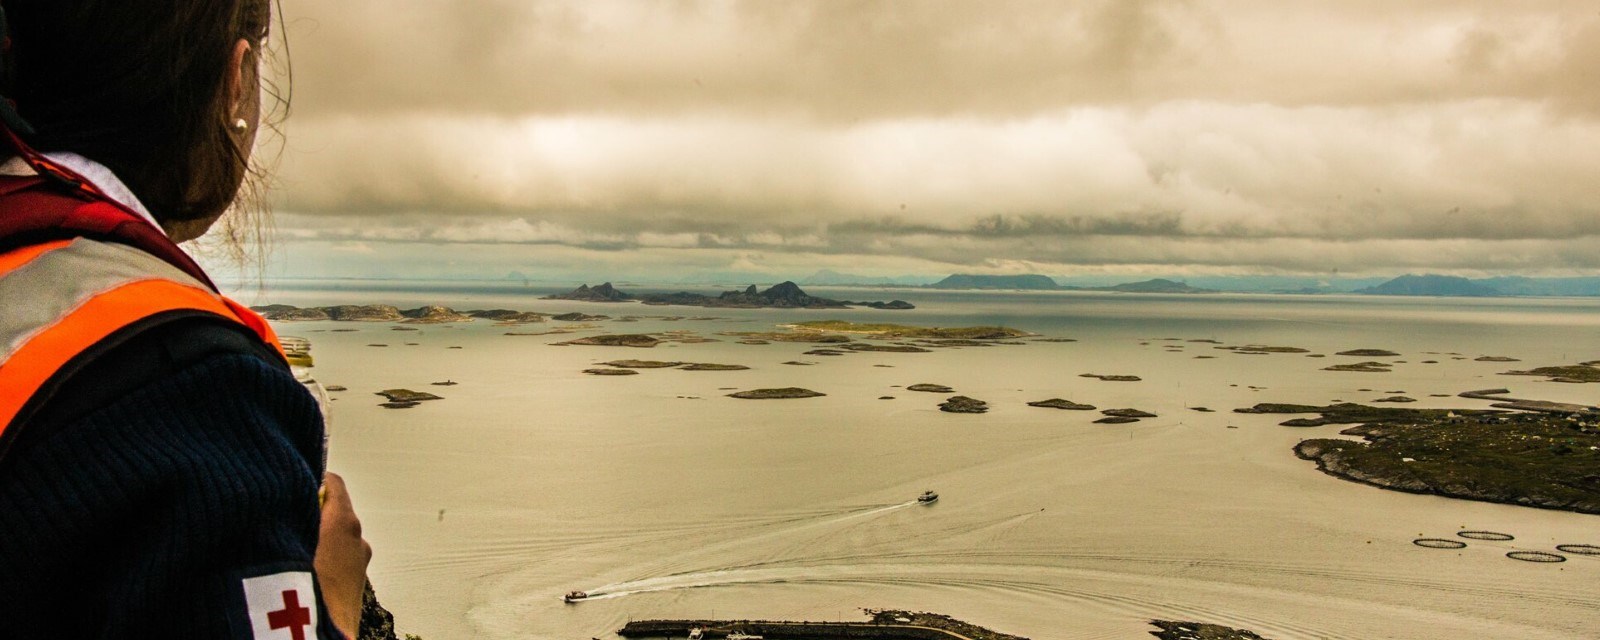 En hjelpekorpser fra Sandnessjøen skuer utover havet.